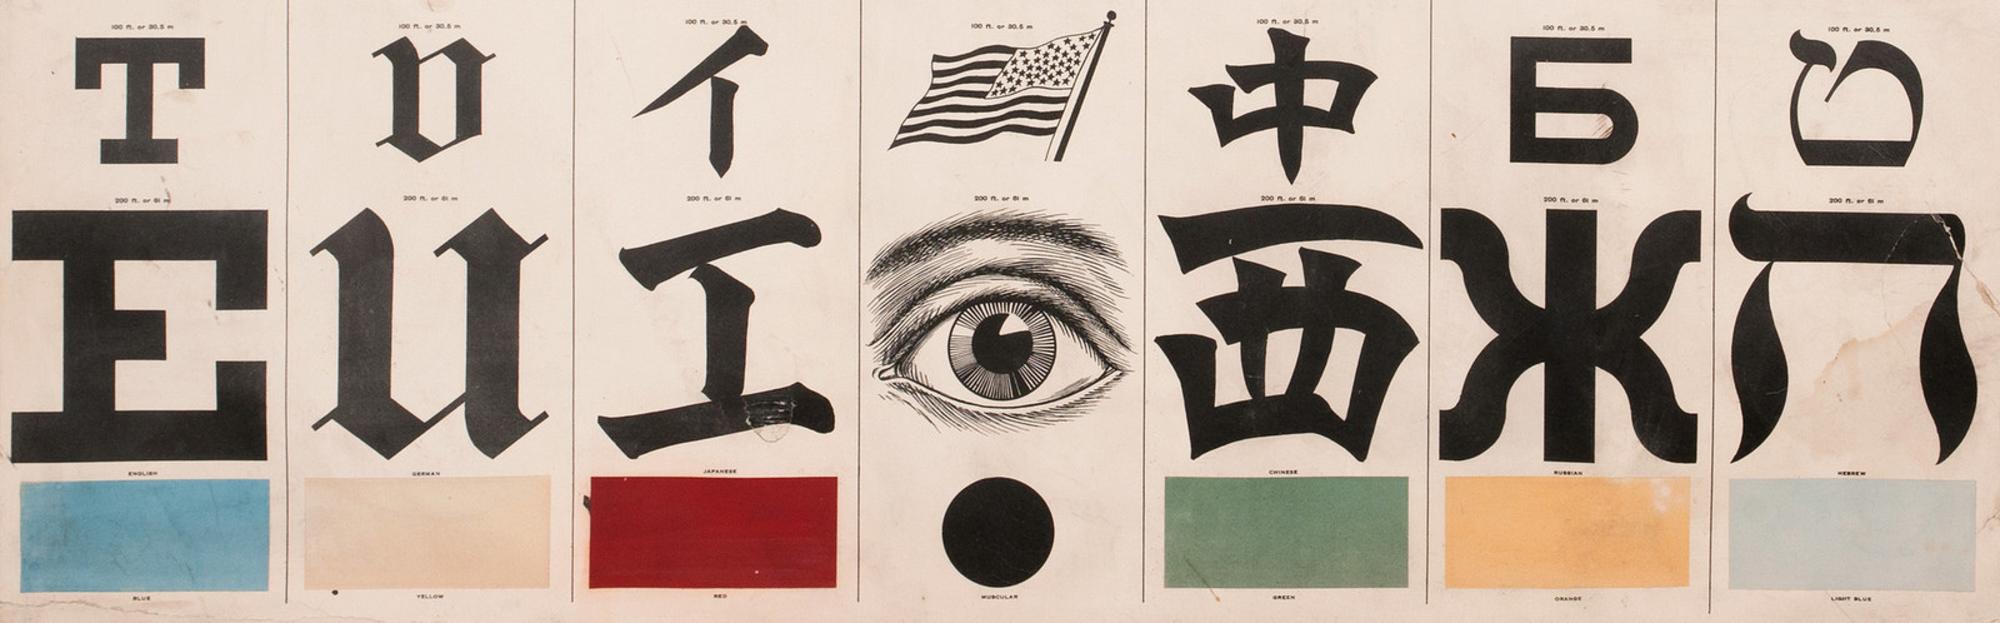 George Mayerle’s Eye Test Chart (ca. 1907)